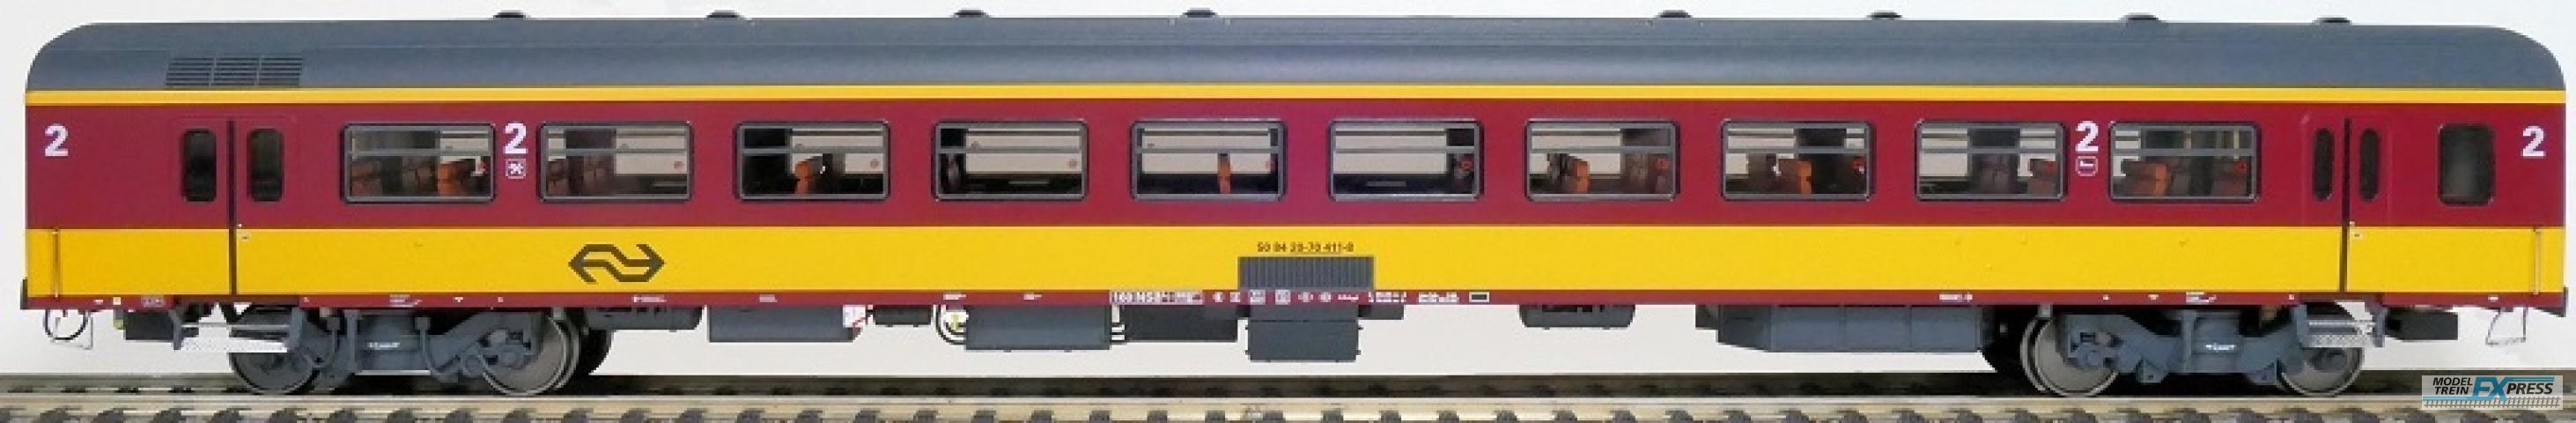 Exact-train 11173 NS ICR (Originalversion) für den Beneluxzug nach Belgien Reisezugwagen B ( Farbe Gelb / Rot) mit Beleuchtung und Figuren, Ep. IV